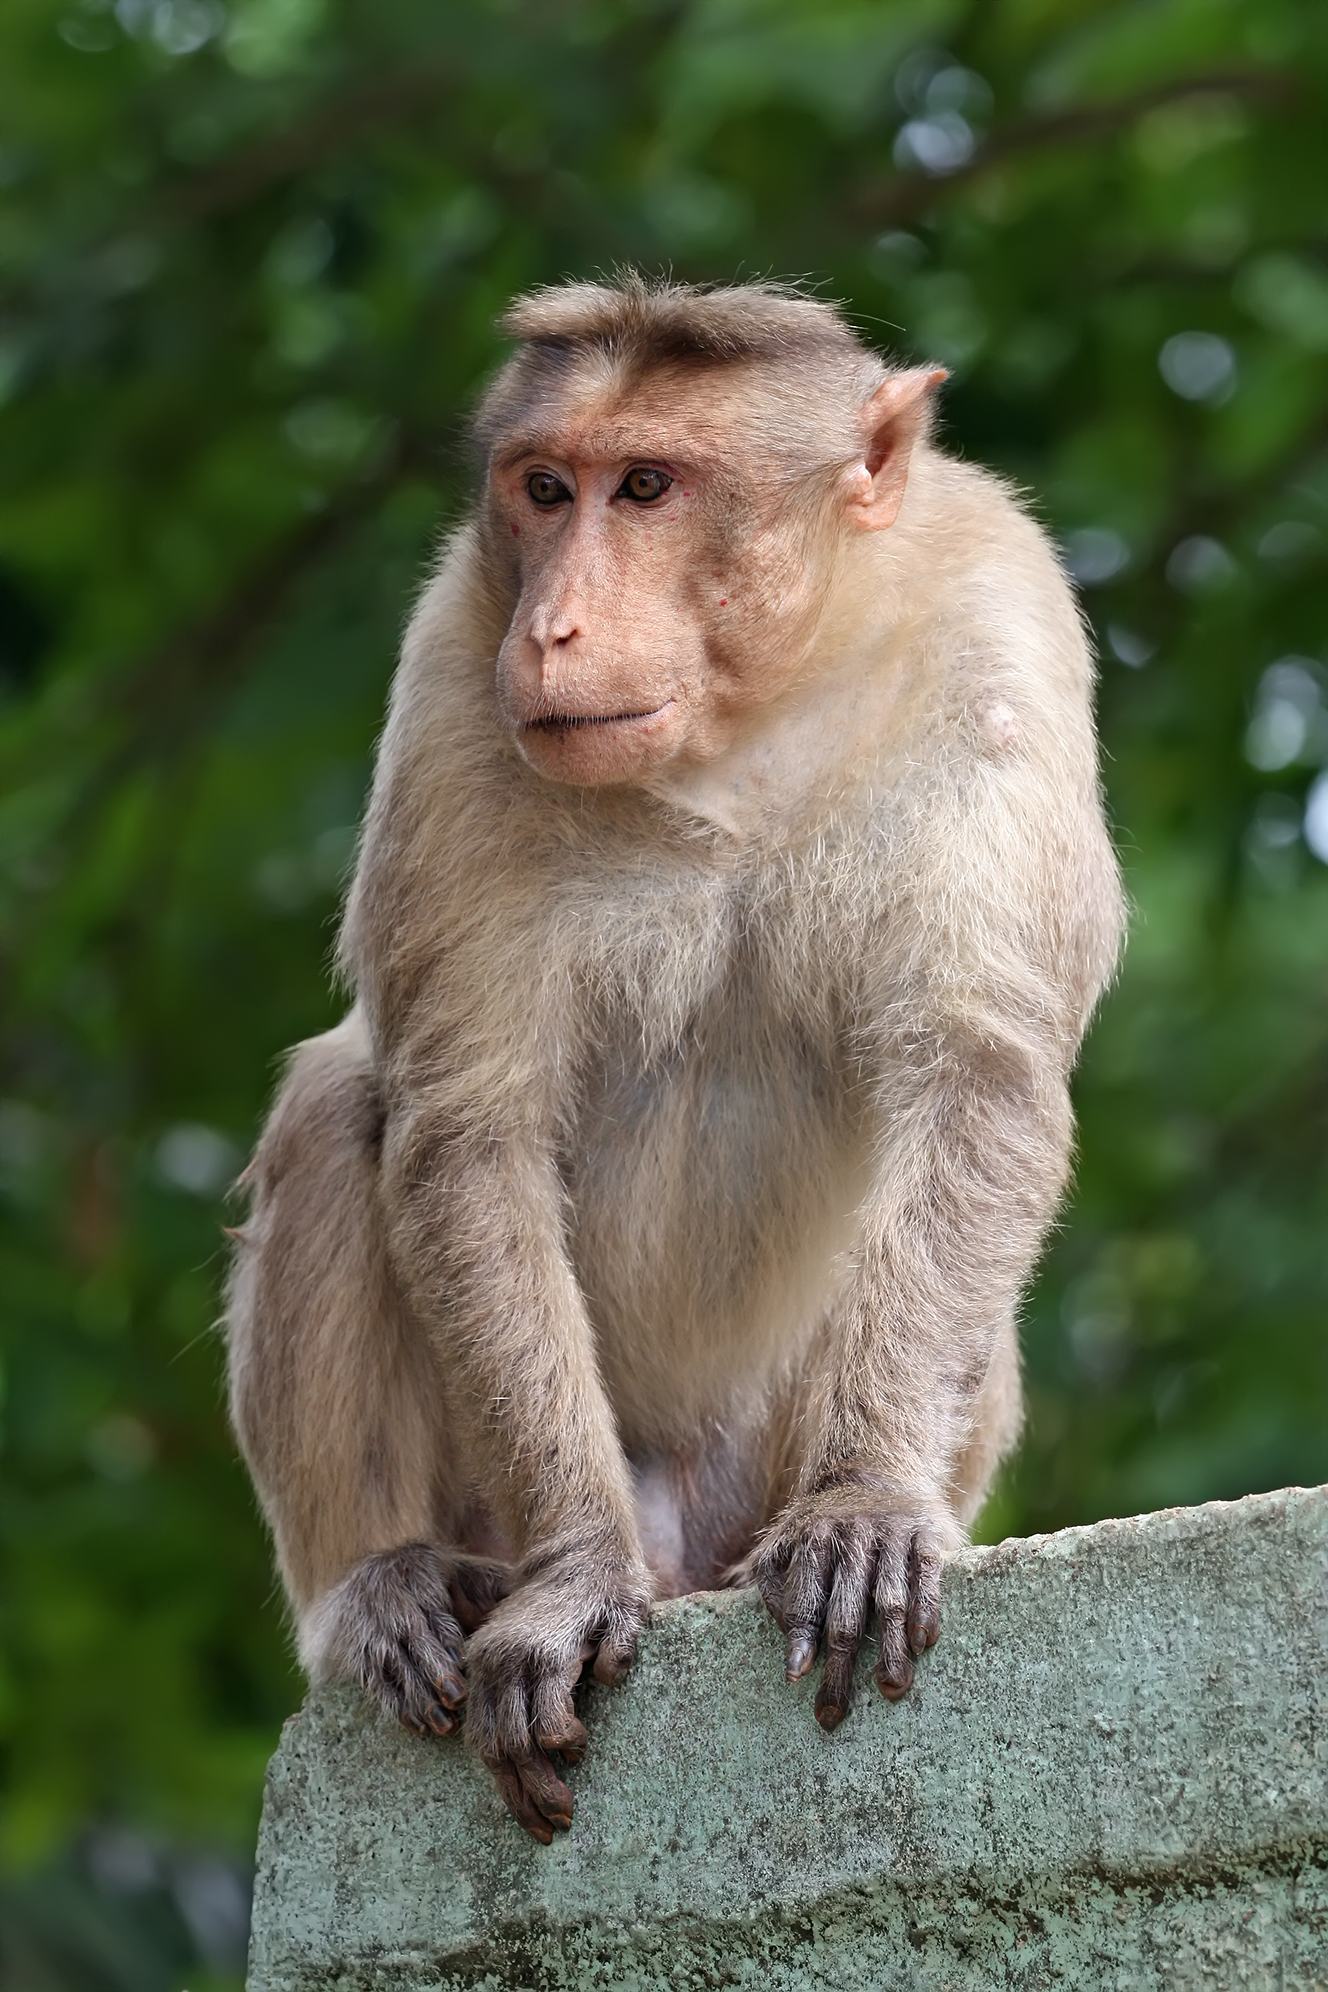 Hãy chiêm ngưỡng hình ảnh một con khỉ đẹp nhất từng được chụp lại. Với bộ lông bóng loáng và ánh mắt sáng ngời, chắc chắn bạn sẽ bị mê hoặc bởi vẻ đẹp của chúng. Hãy xem và tận hưởng những khoảnh khắc tuyệt vời này!